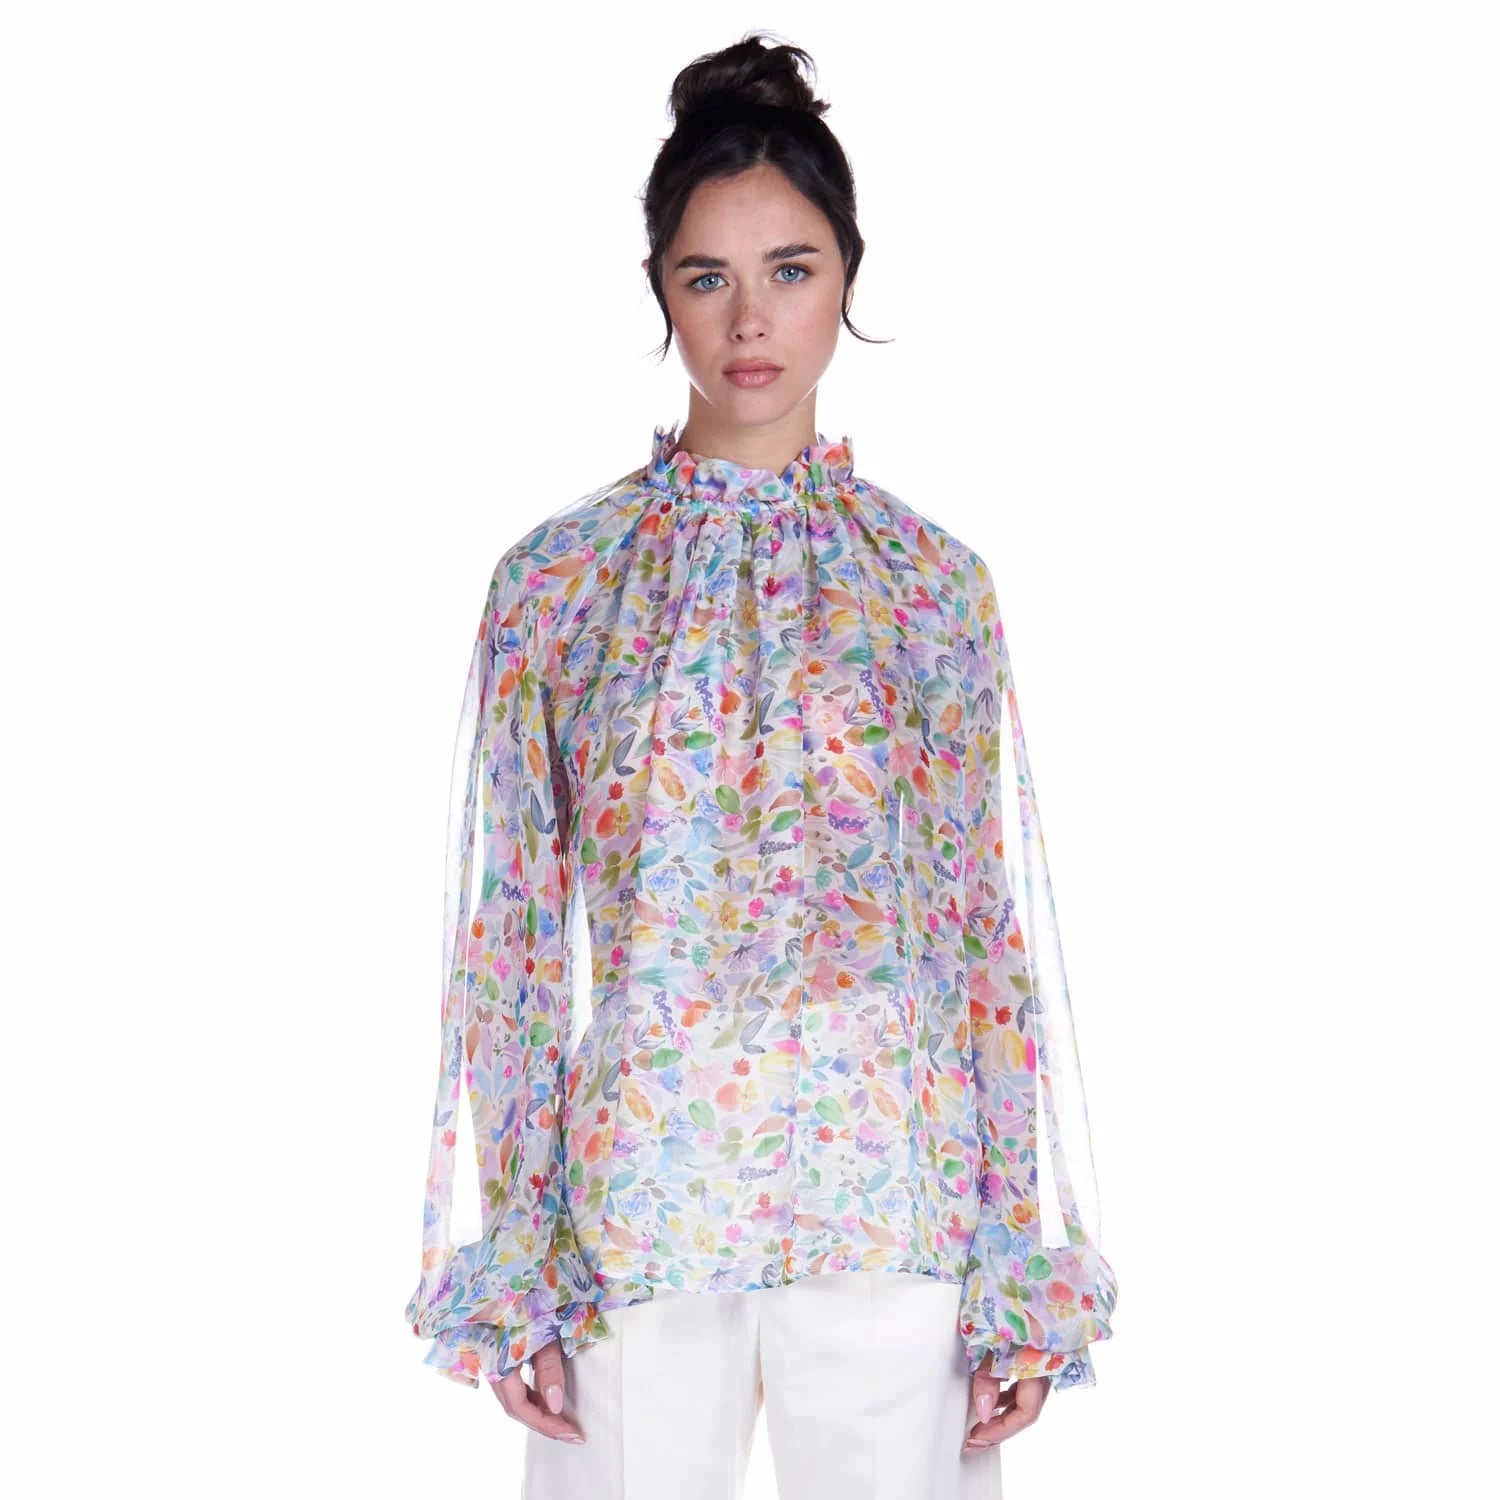 Watercolor print chiffon blouse - Blouse